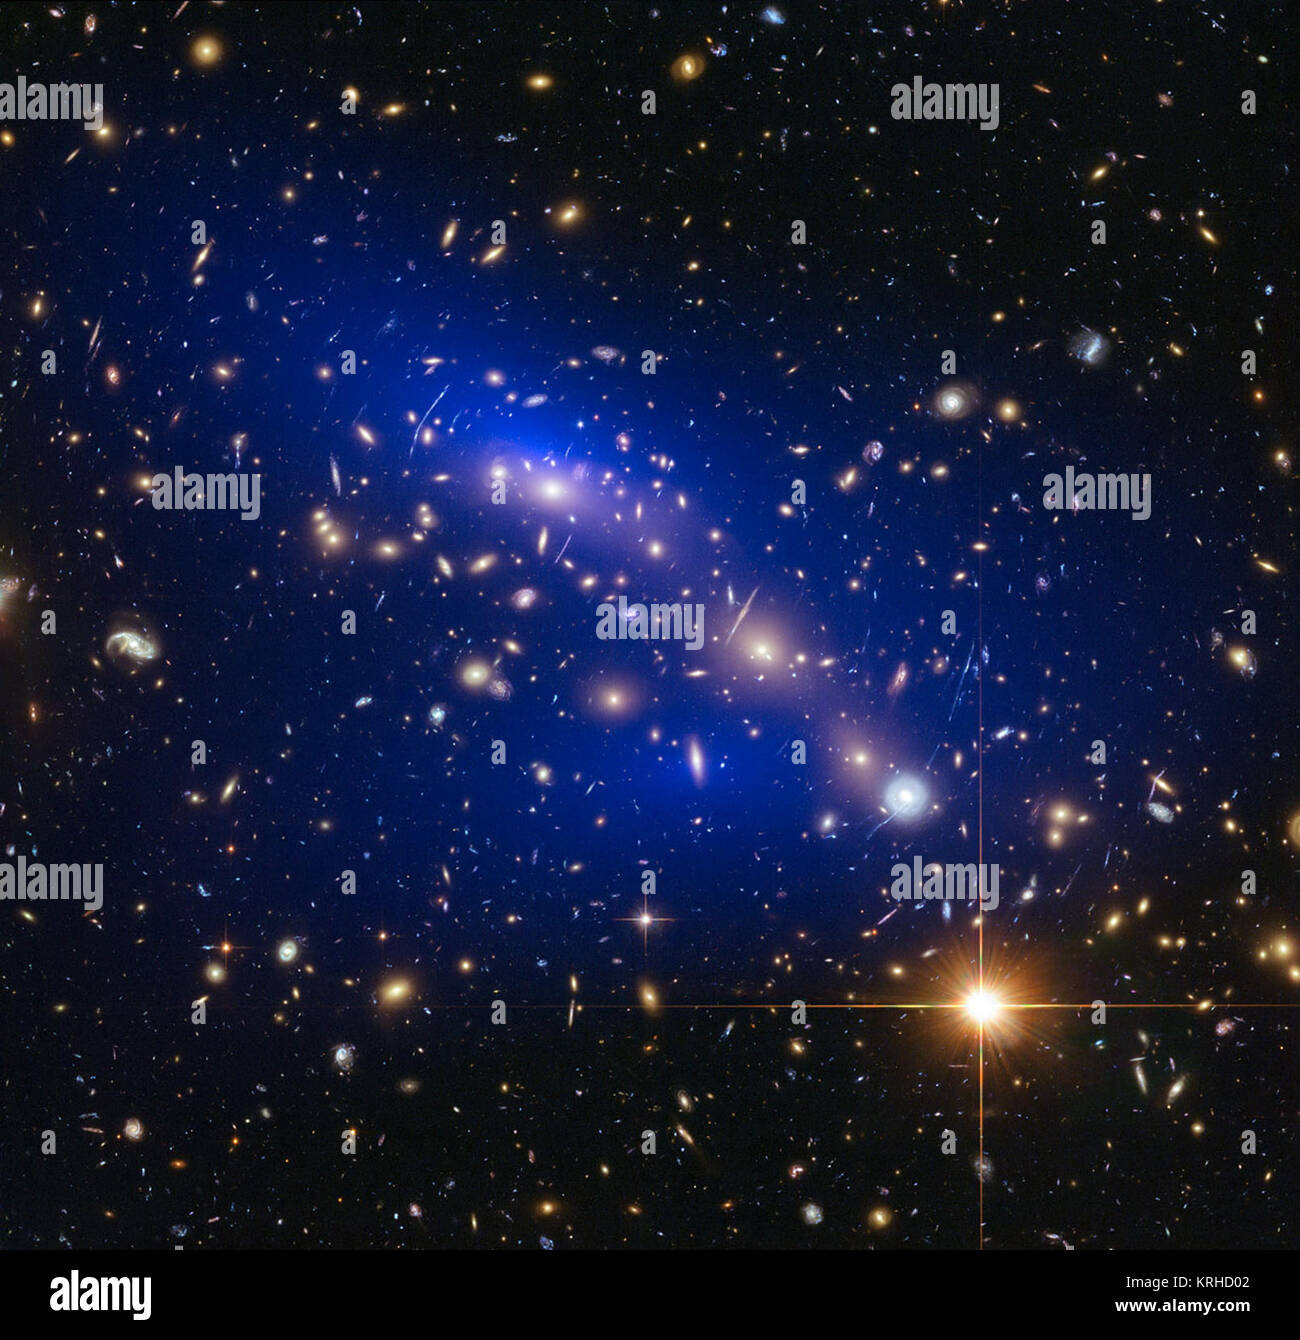 Dies ist ein NASA/ESA Hubble Space Telescope Bild der Galaxienhaufen MACS J 0416.1 - 2403. Gezeigt in Blau auf dem Bild ist eine Karte der Dunklen Materie innerhalb der Cluster gefunden. Dieser Cluster wurde Teil einer Studie von 72 Galaxienhaufen Kollisionen, welche die dunkle Materie interagiert mit anderen dunkle Materie bestimmt noch weniger als bisher gedacht. MACS J 0416.1-2403-Hubble (Röntgen) Stockfoto